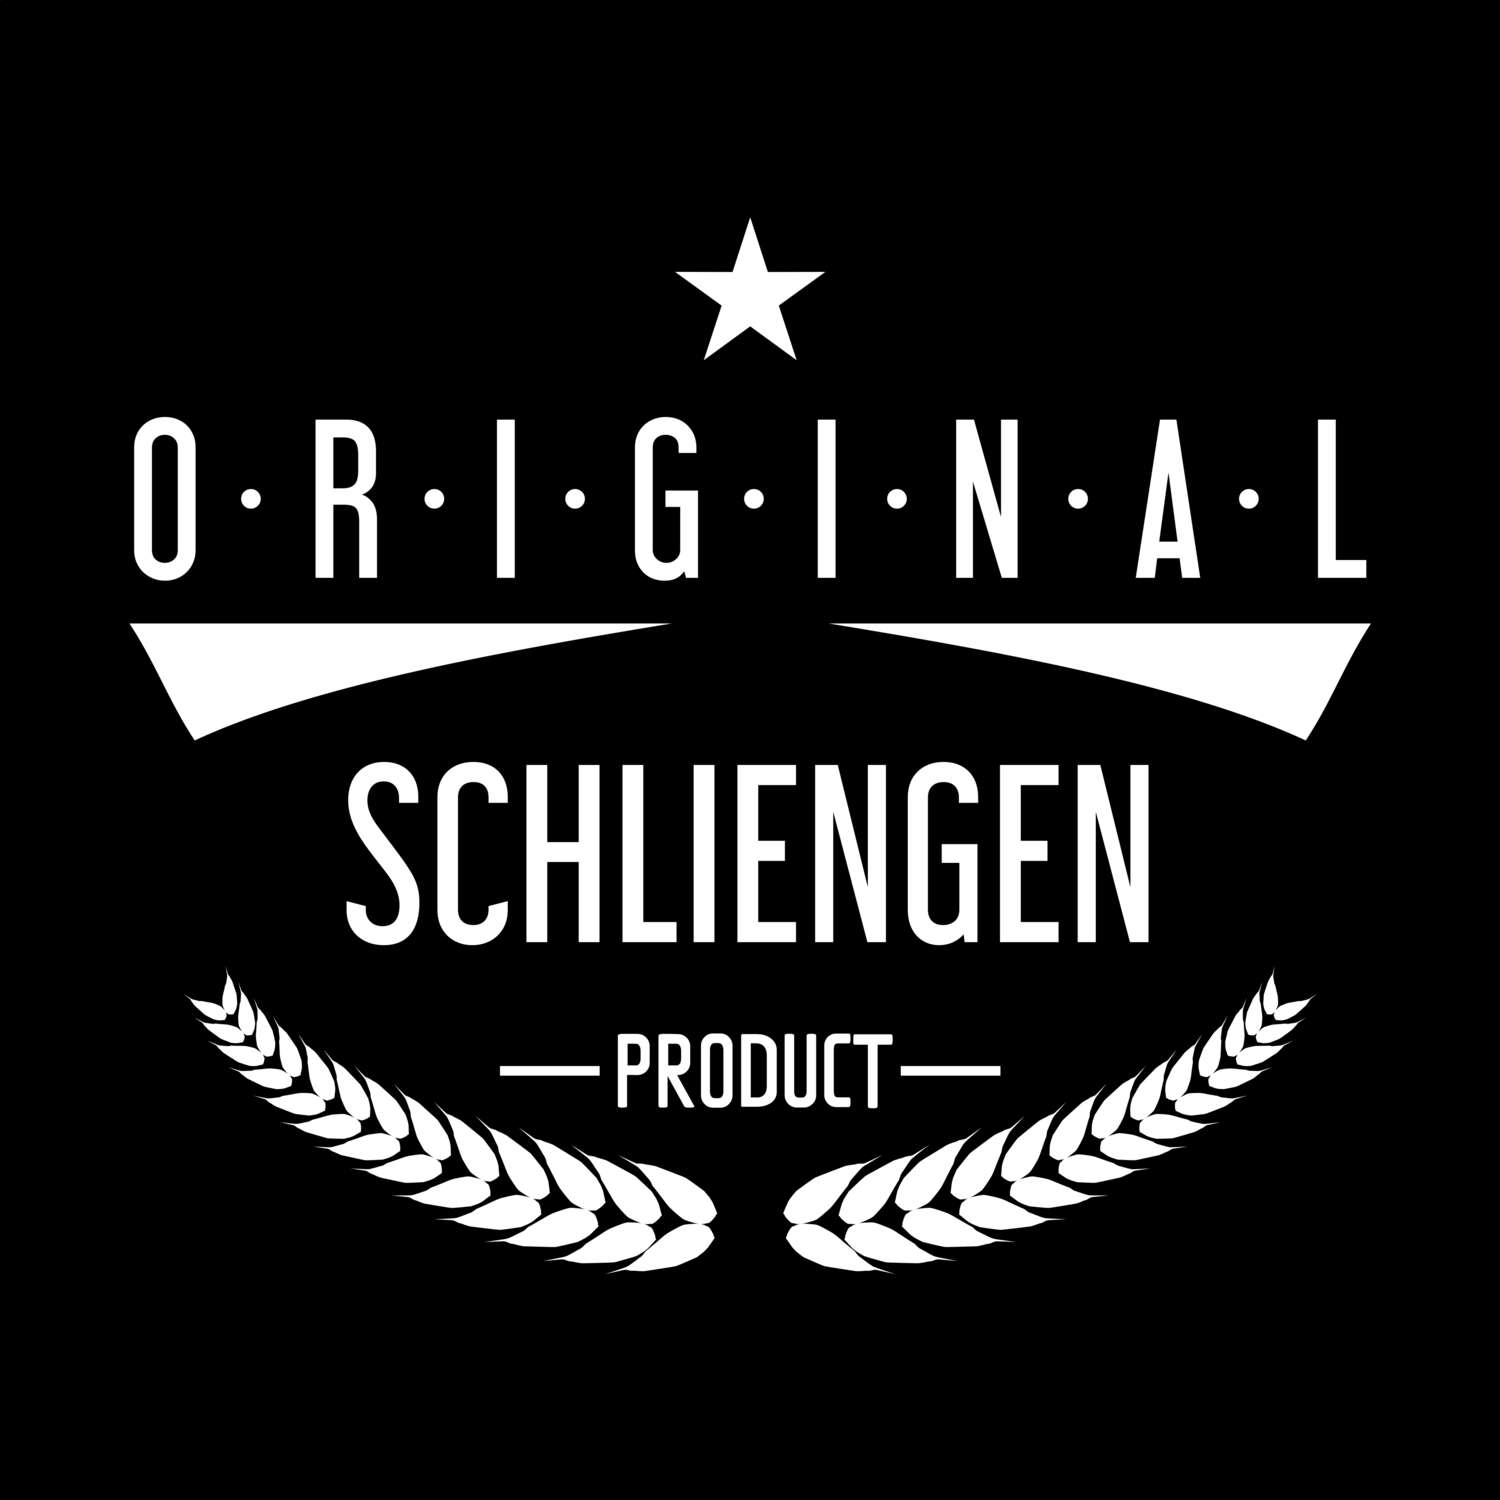 Schliengen T-Shirt »Original Product«